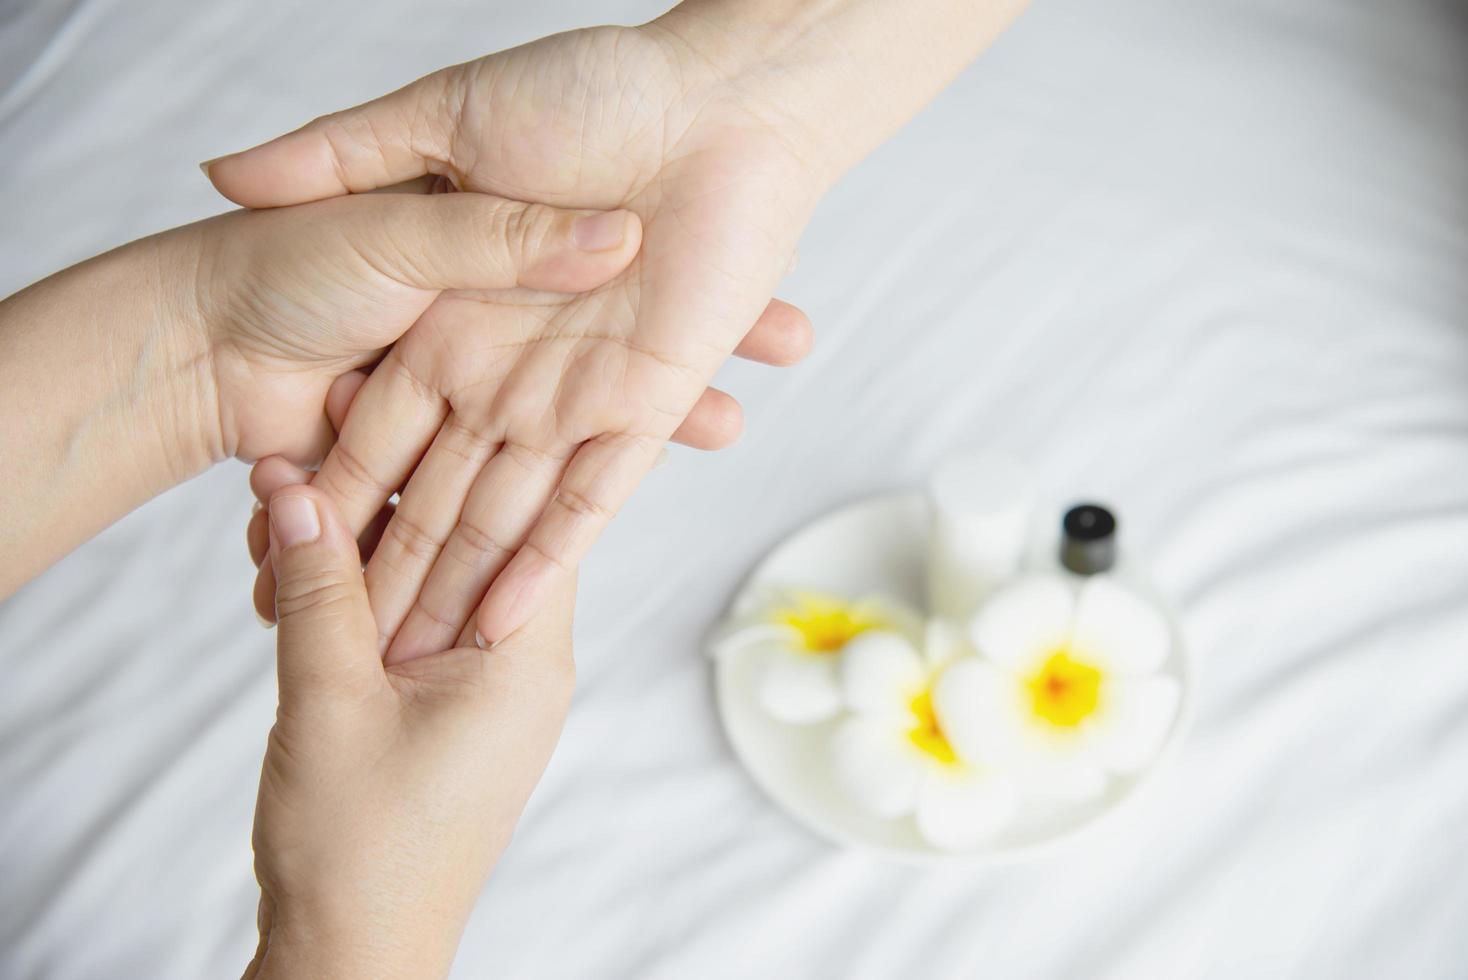 massagem de spa de mão sobre fundo de cama branca limpa - as pessoas relaxam com serviço de massagem de mão foto